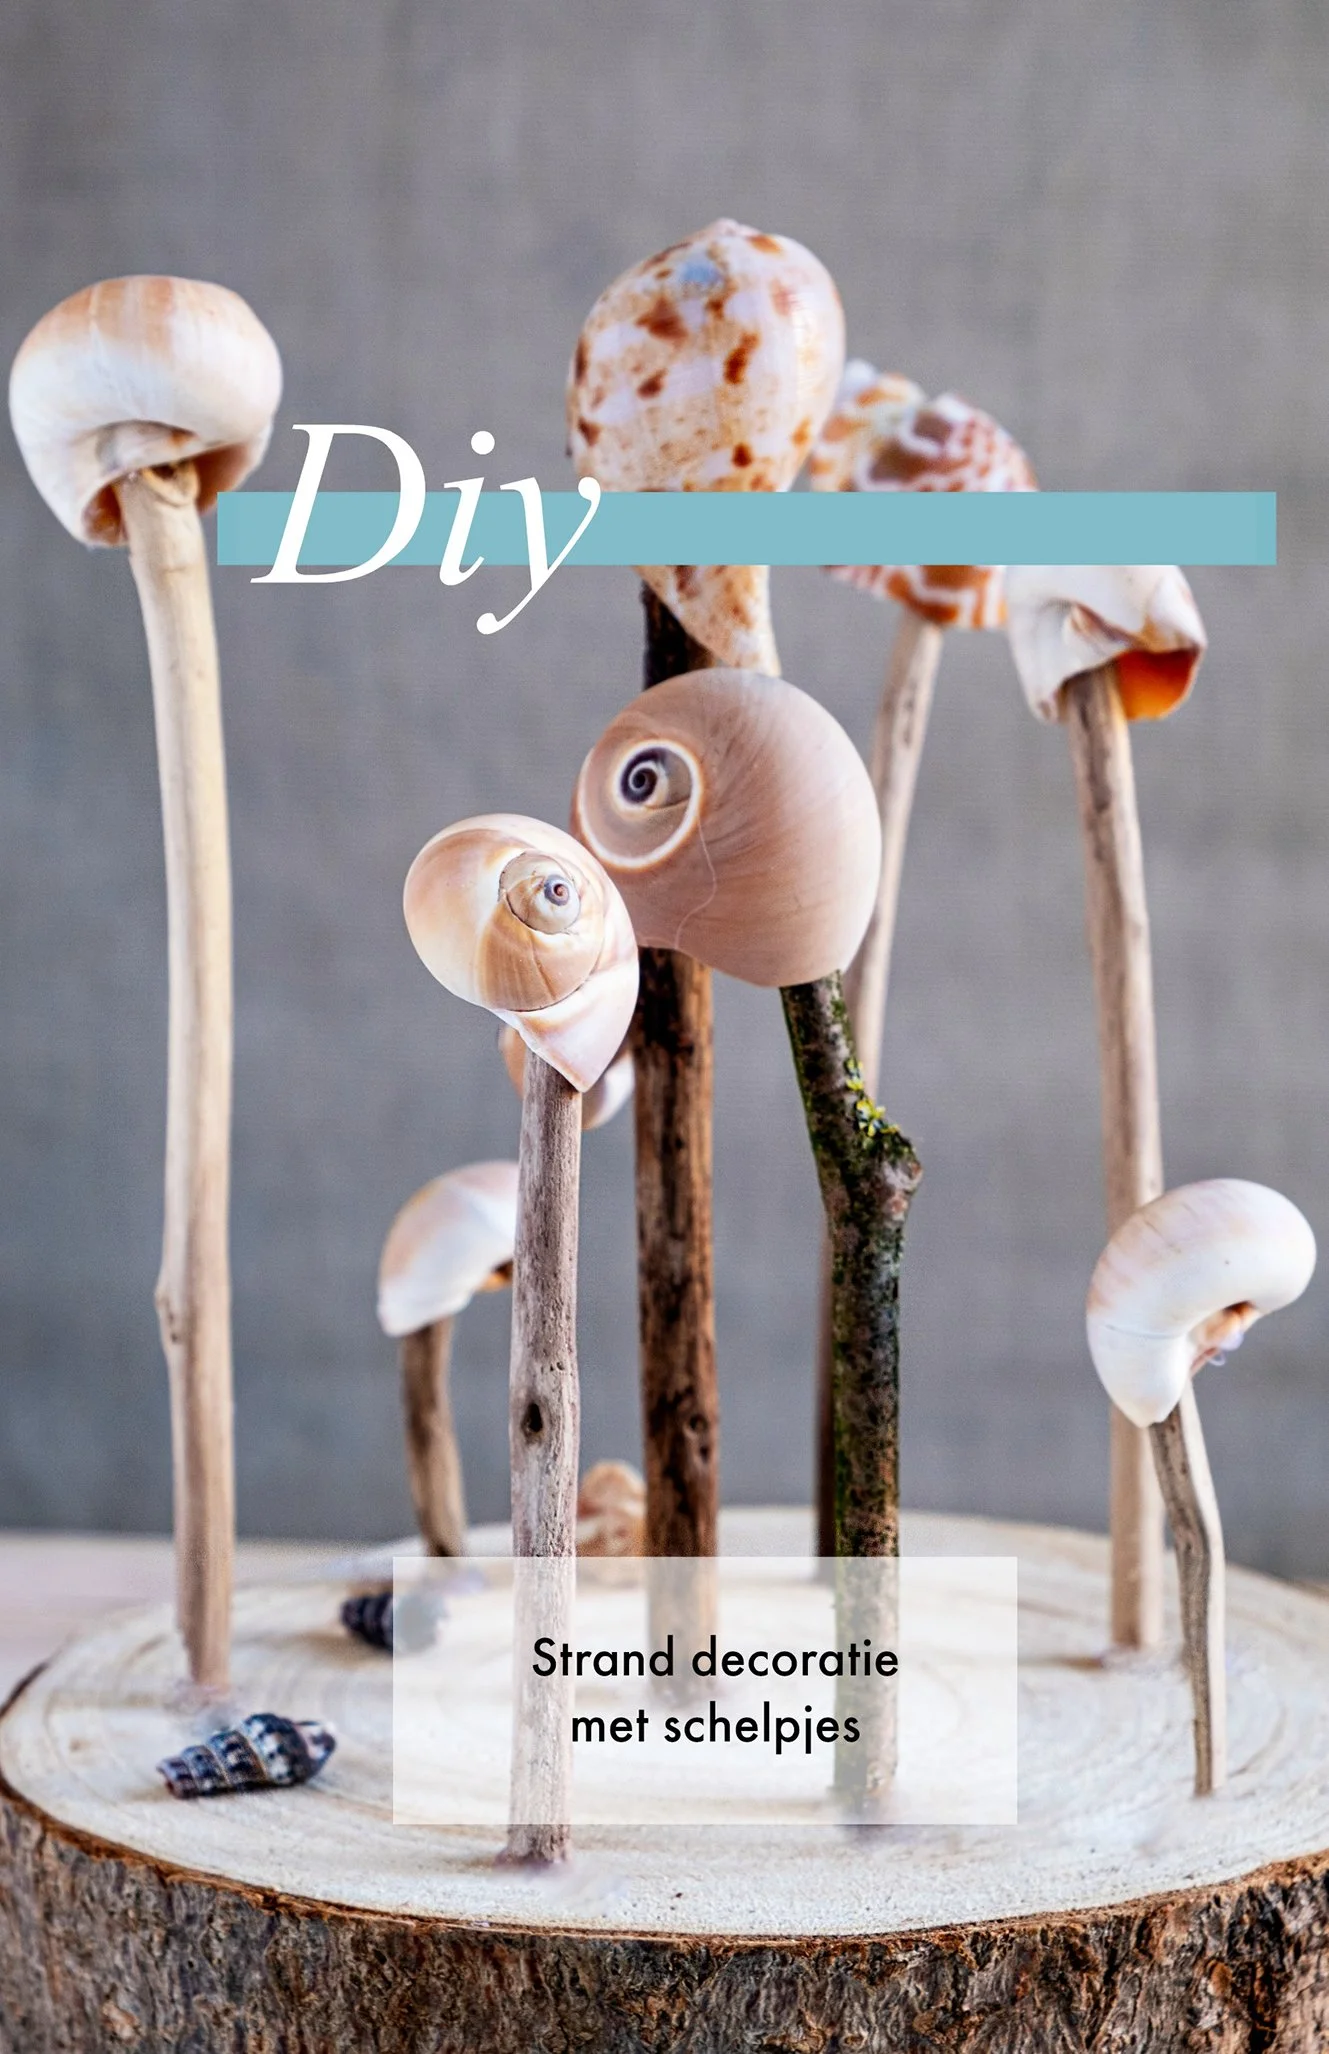 Pin Strand decoratie met schelpjes - Diy